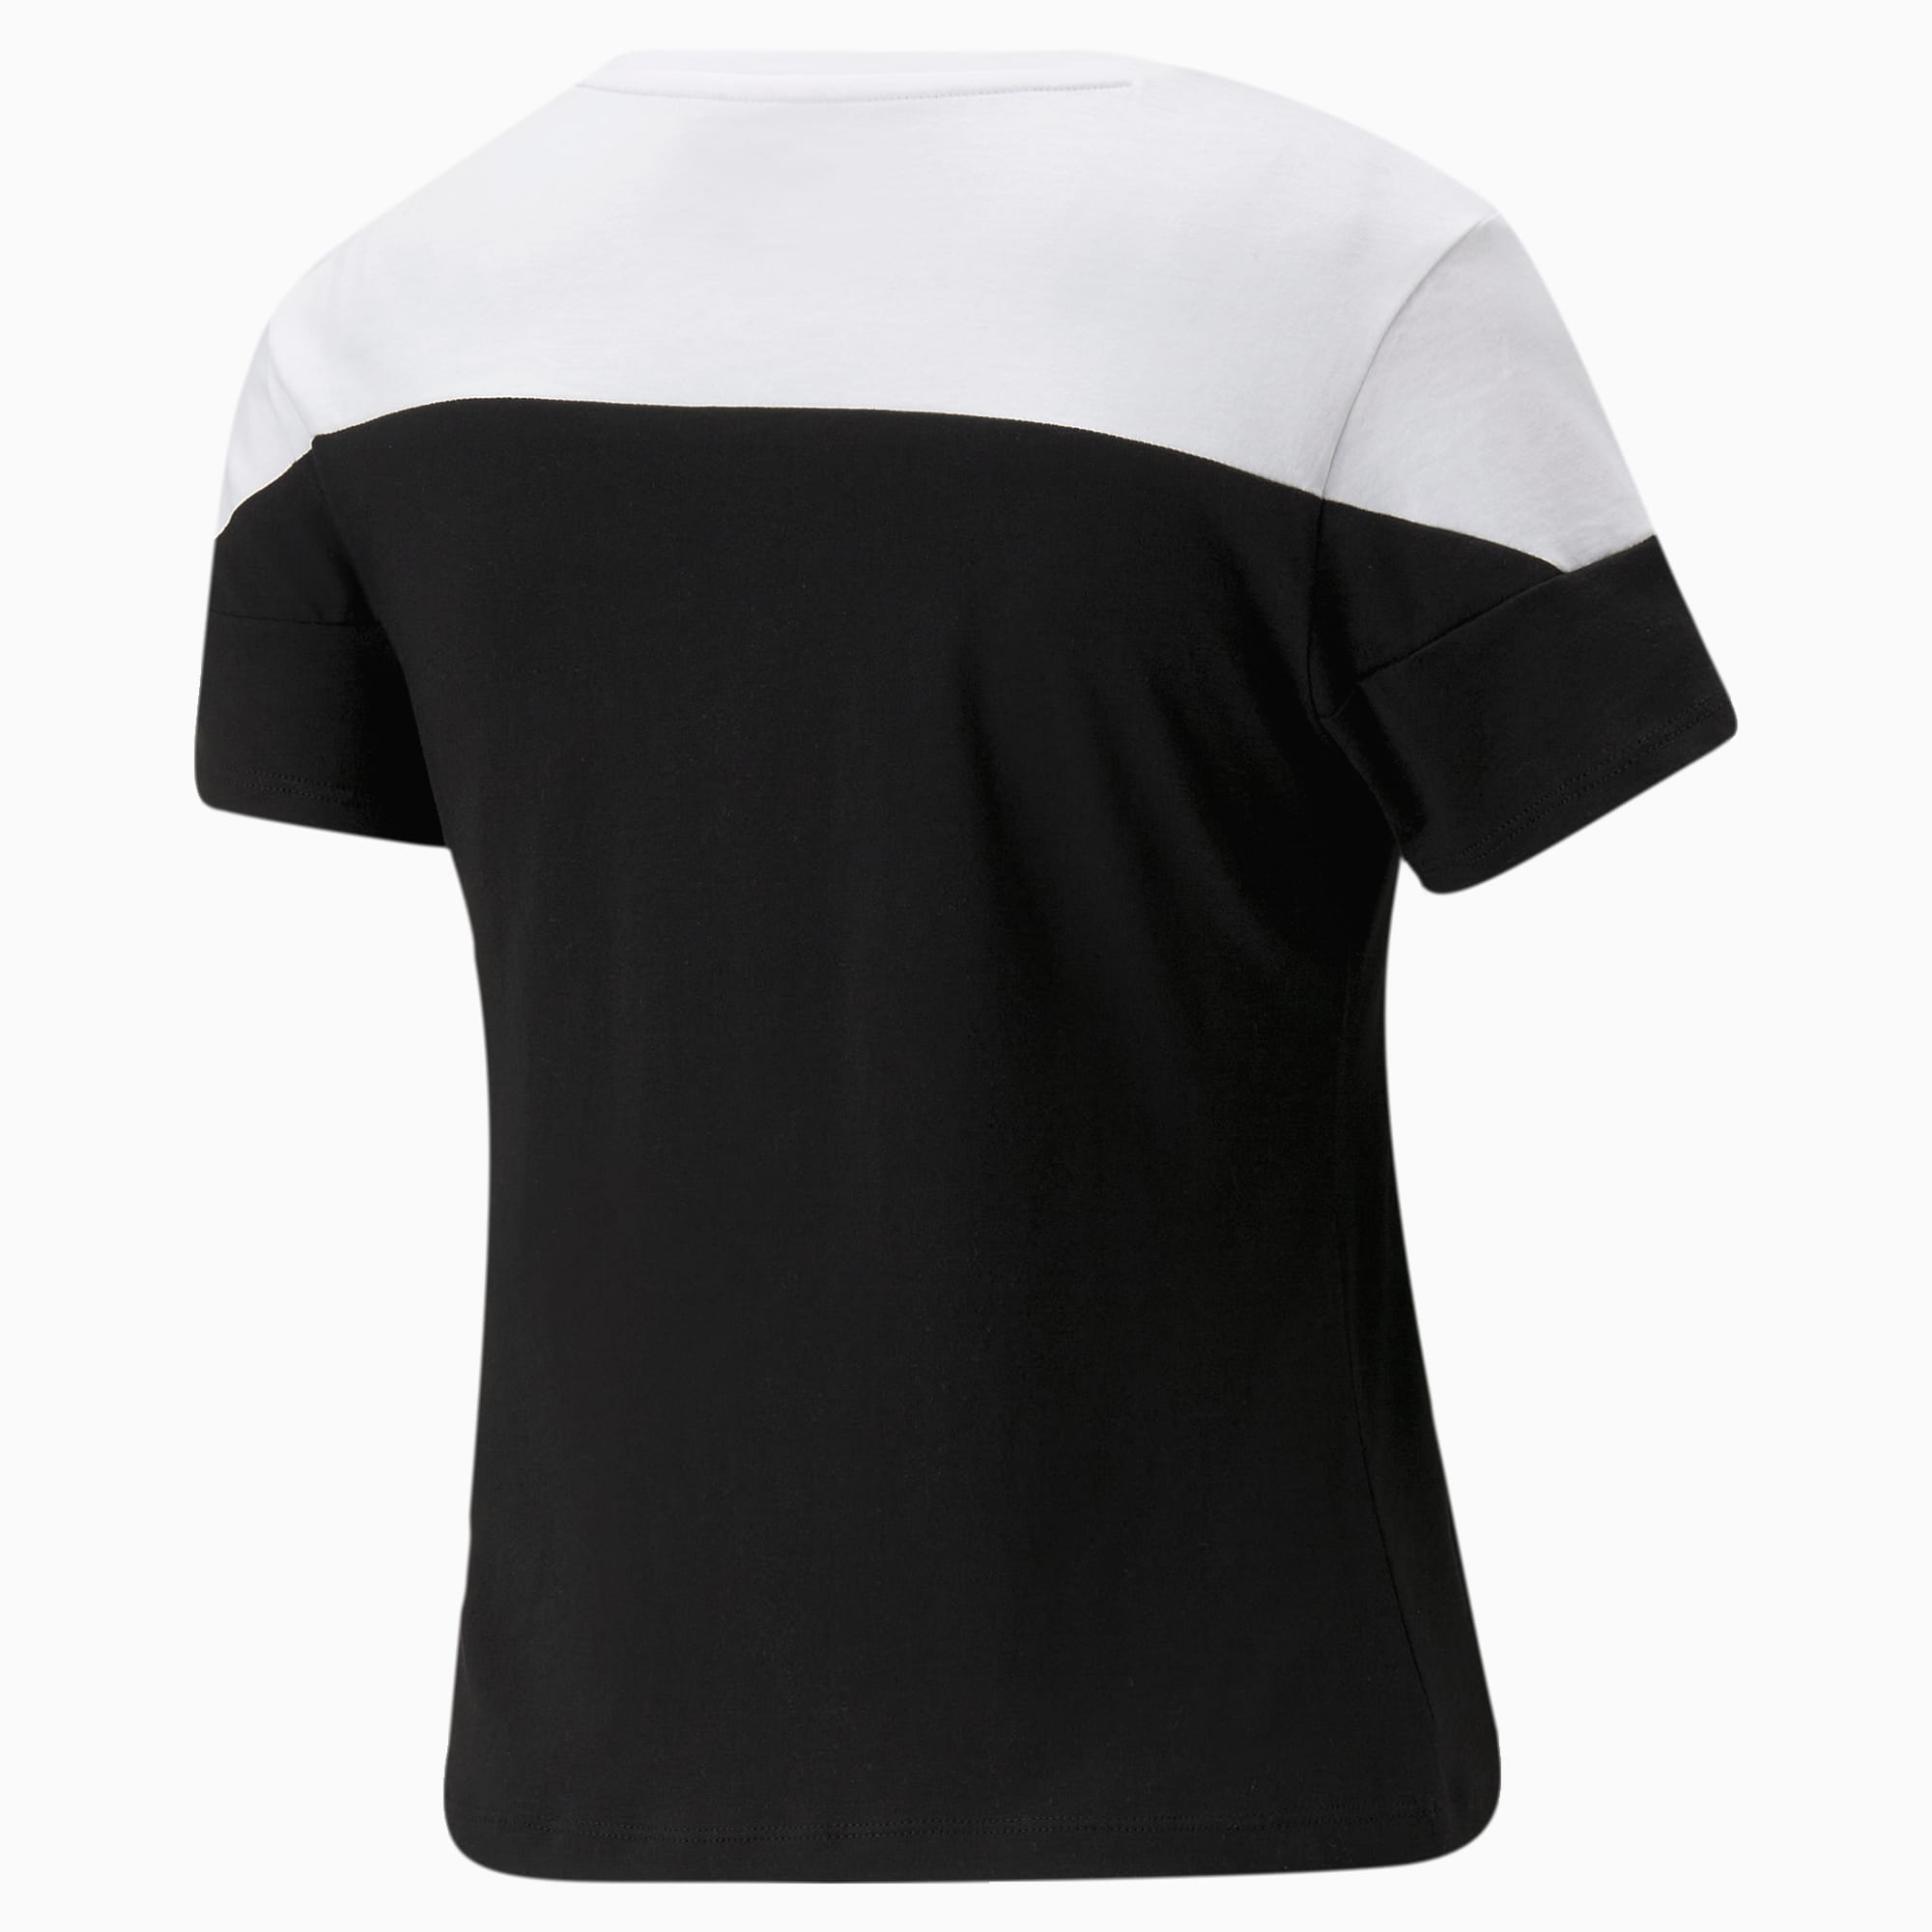 PUMA Around The Block T-shirt Voor Dames, Wit/Zwart